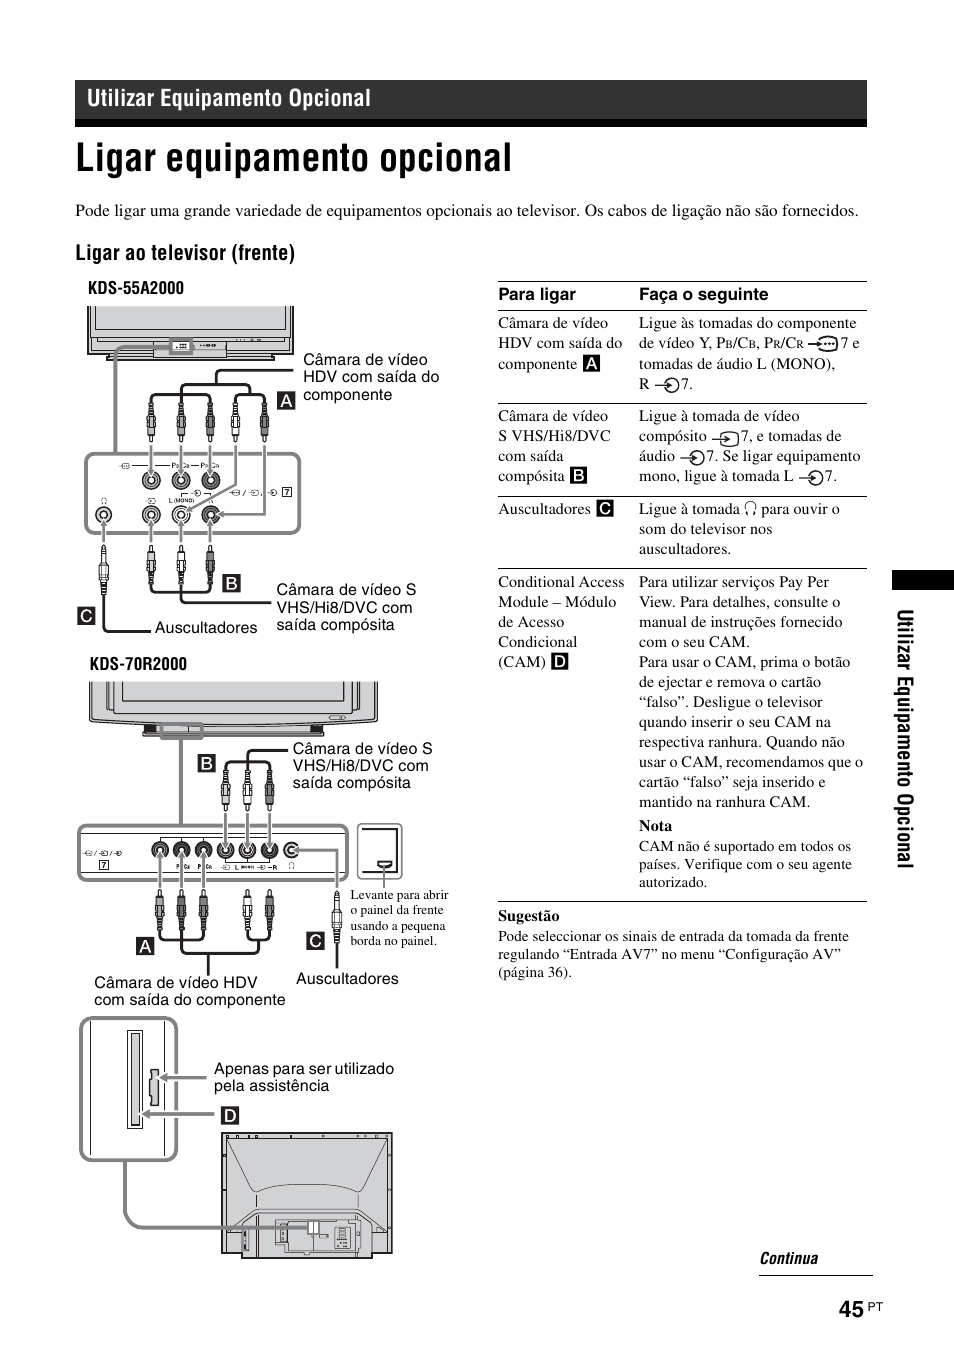 Utilizar equipamento opcional, Ligar equipamento opcional | Инструкция по эксплуатации Sony KDS-70R2000 | Страница 291 / 372